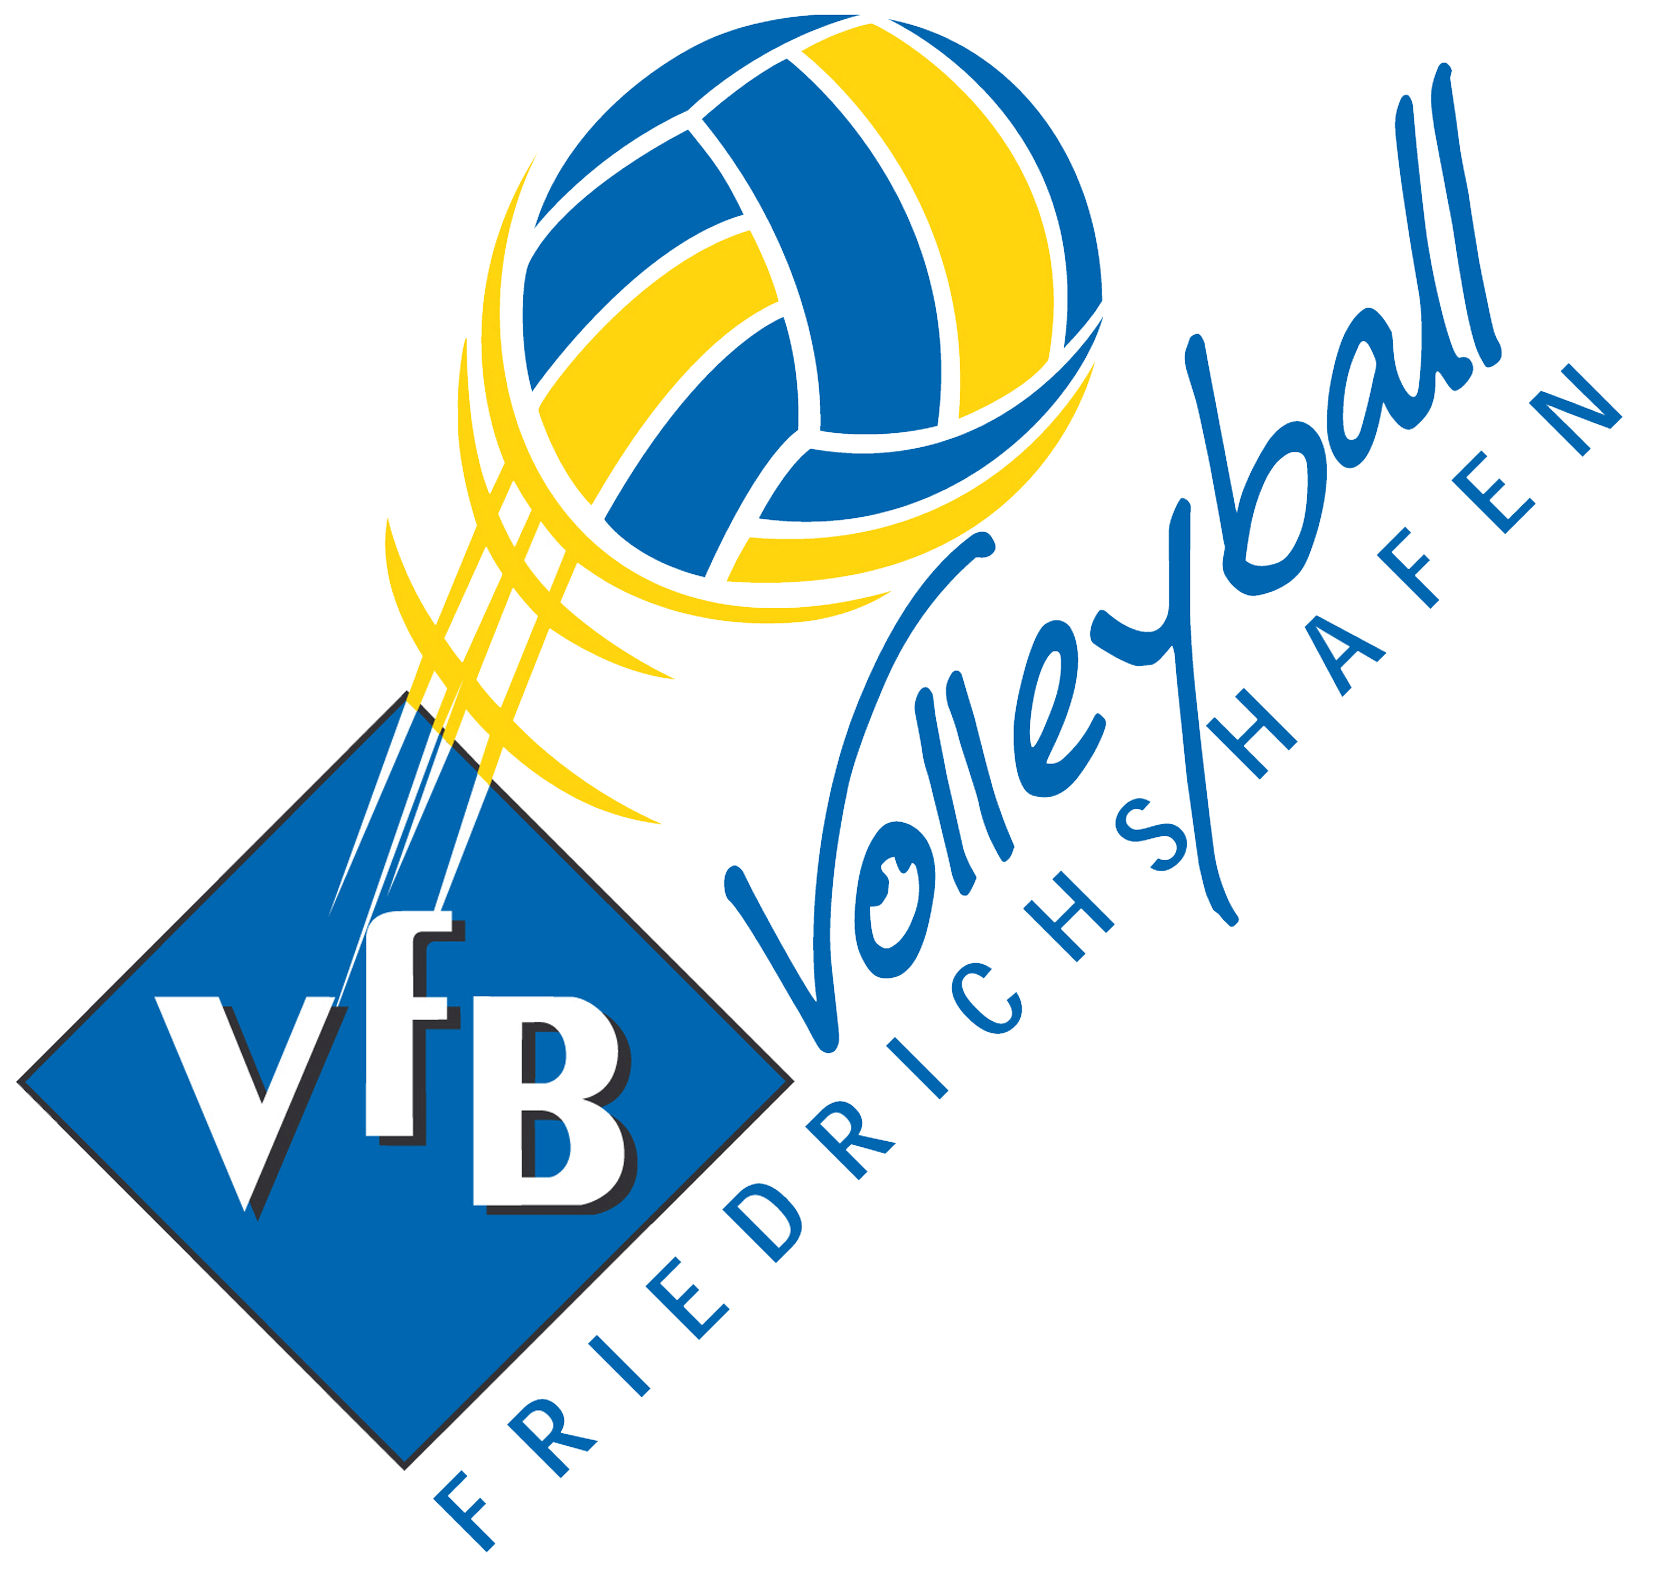 60512 Tischer VFB Friedrichshafen Volleyball original signiert Autogrammkarte 